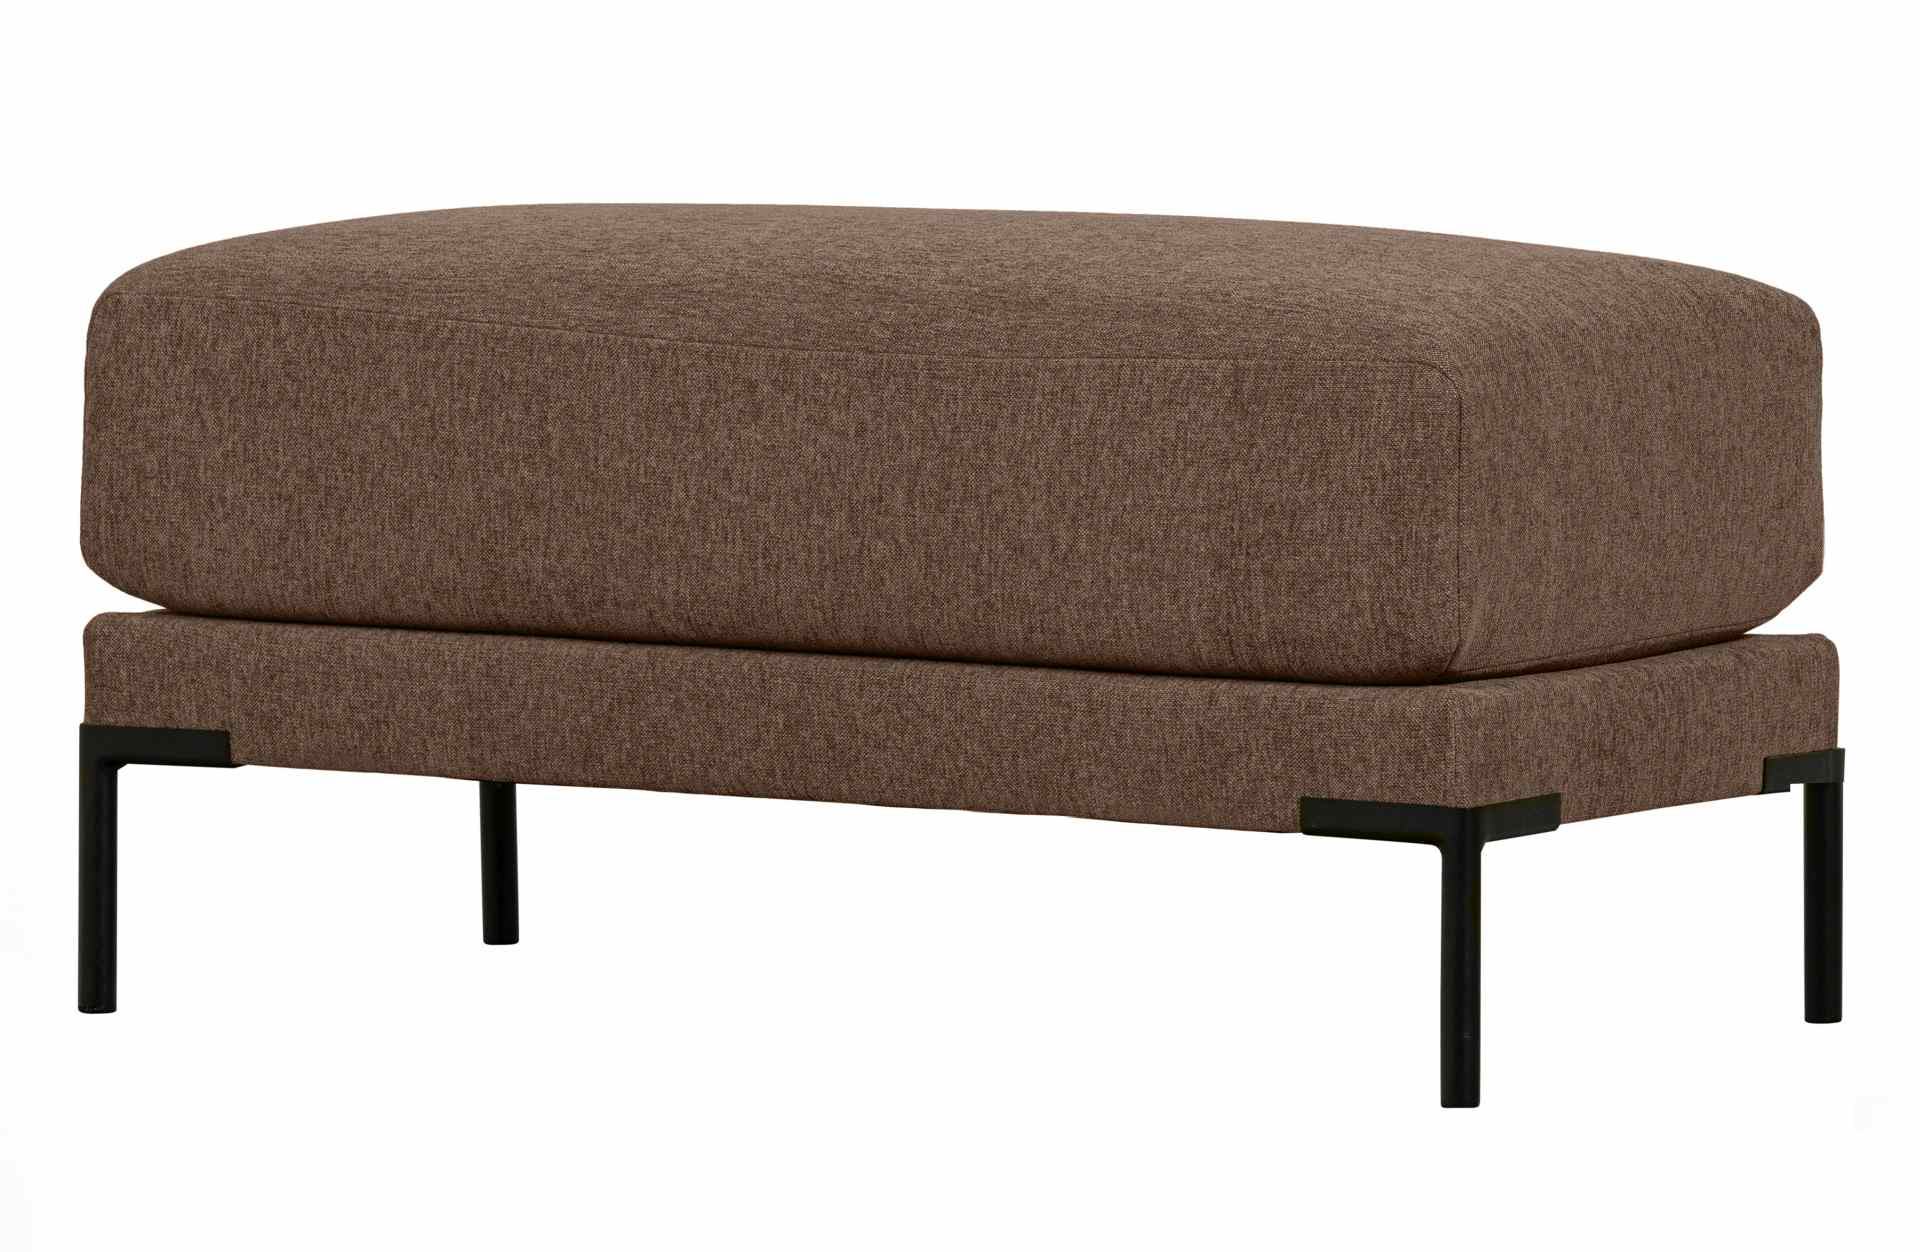 Das Modulsofa Couple Lounge überzeugt mit seinem modernen Design. Das Lounge Element mit der Ausführung 50 cm wurde aus Melange Stoff gefertigt, welcher einen einen braunen Farbton besitzen. Das Gestell ist aus Metall und hat eine schwarze Farbe. Das Elem